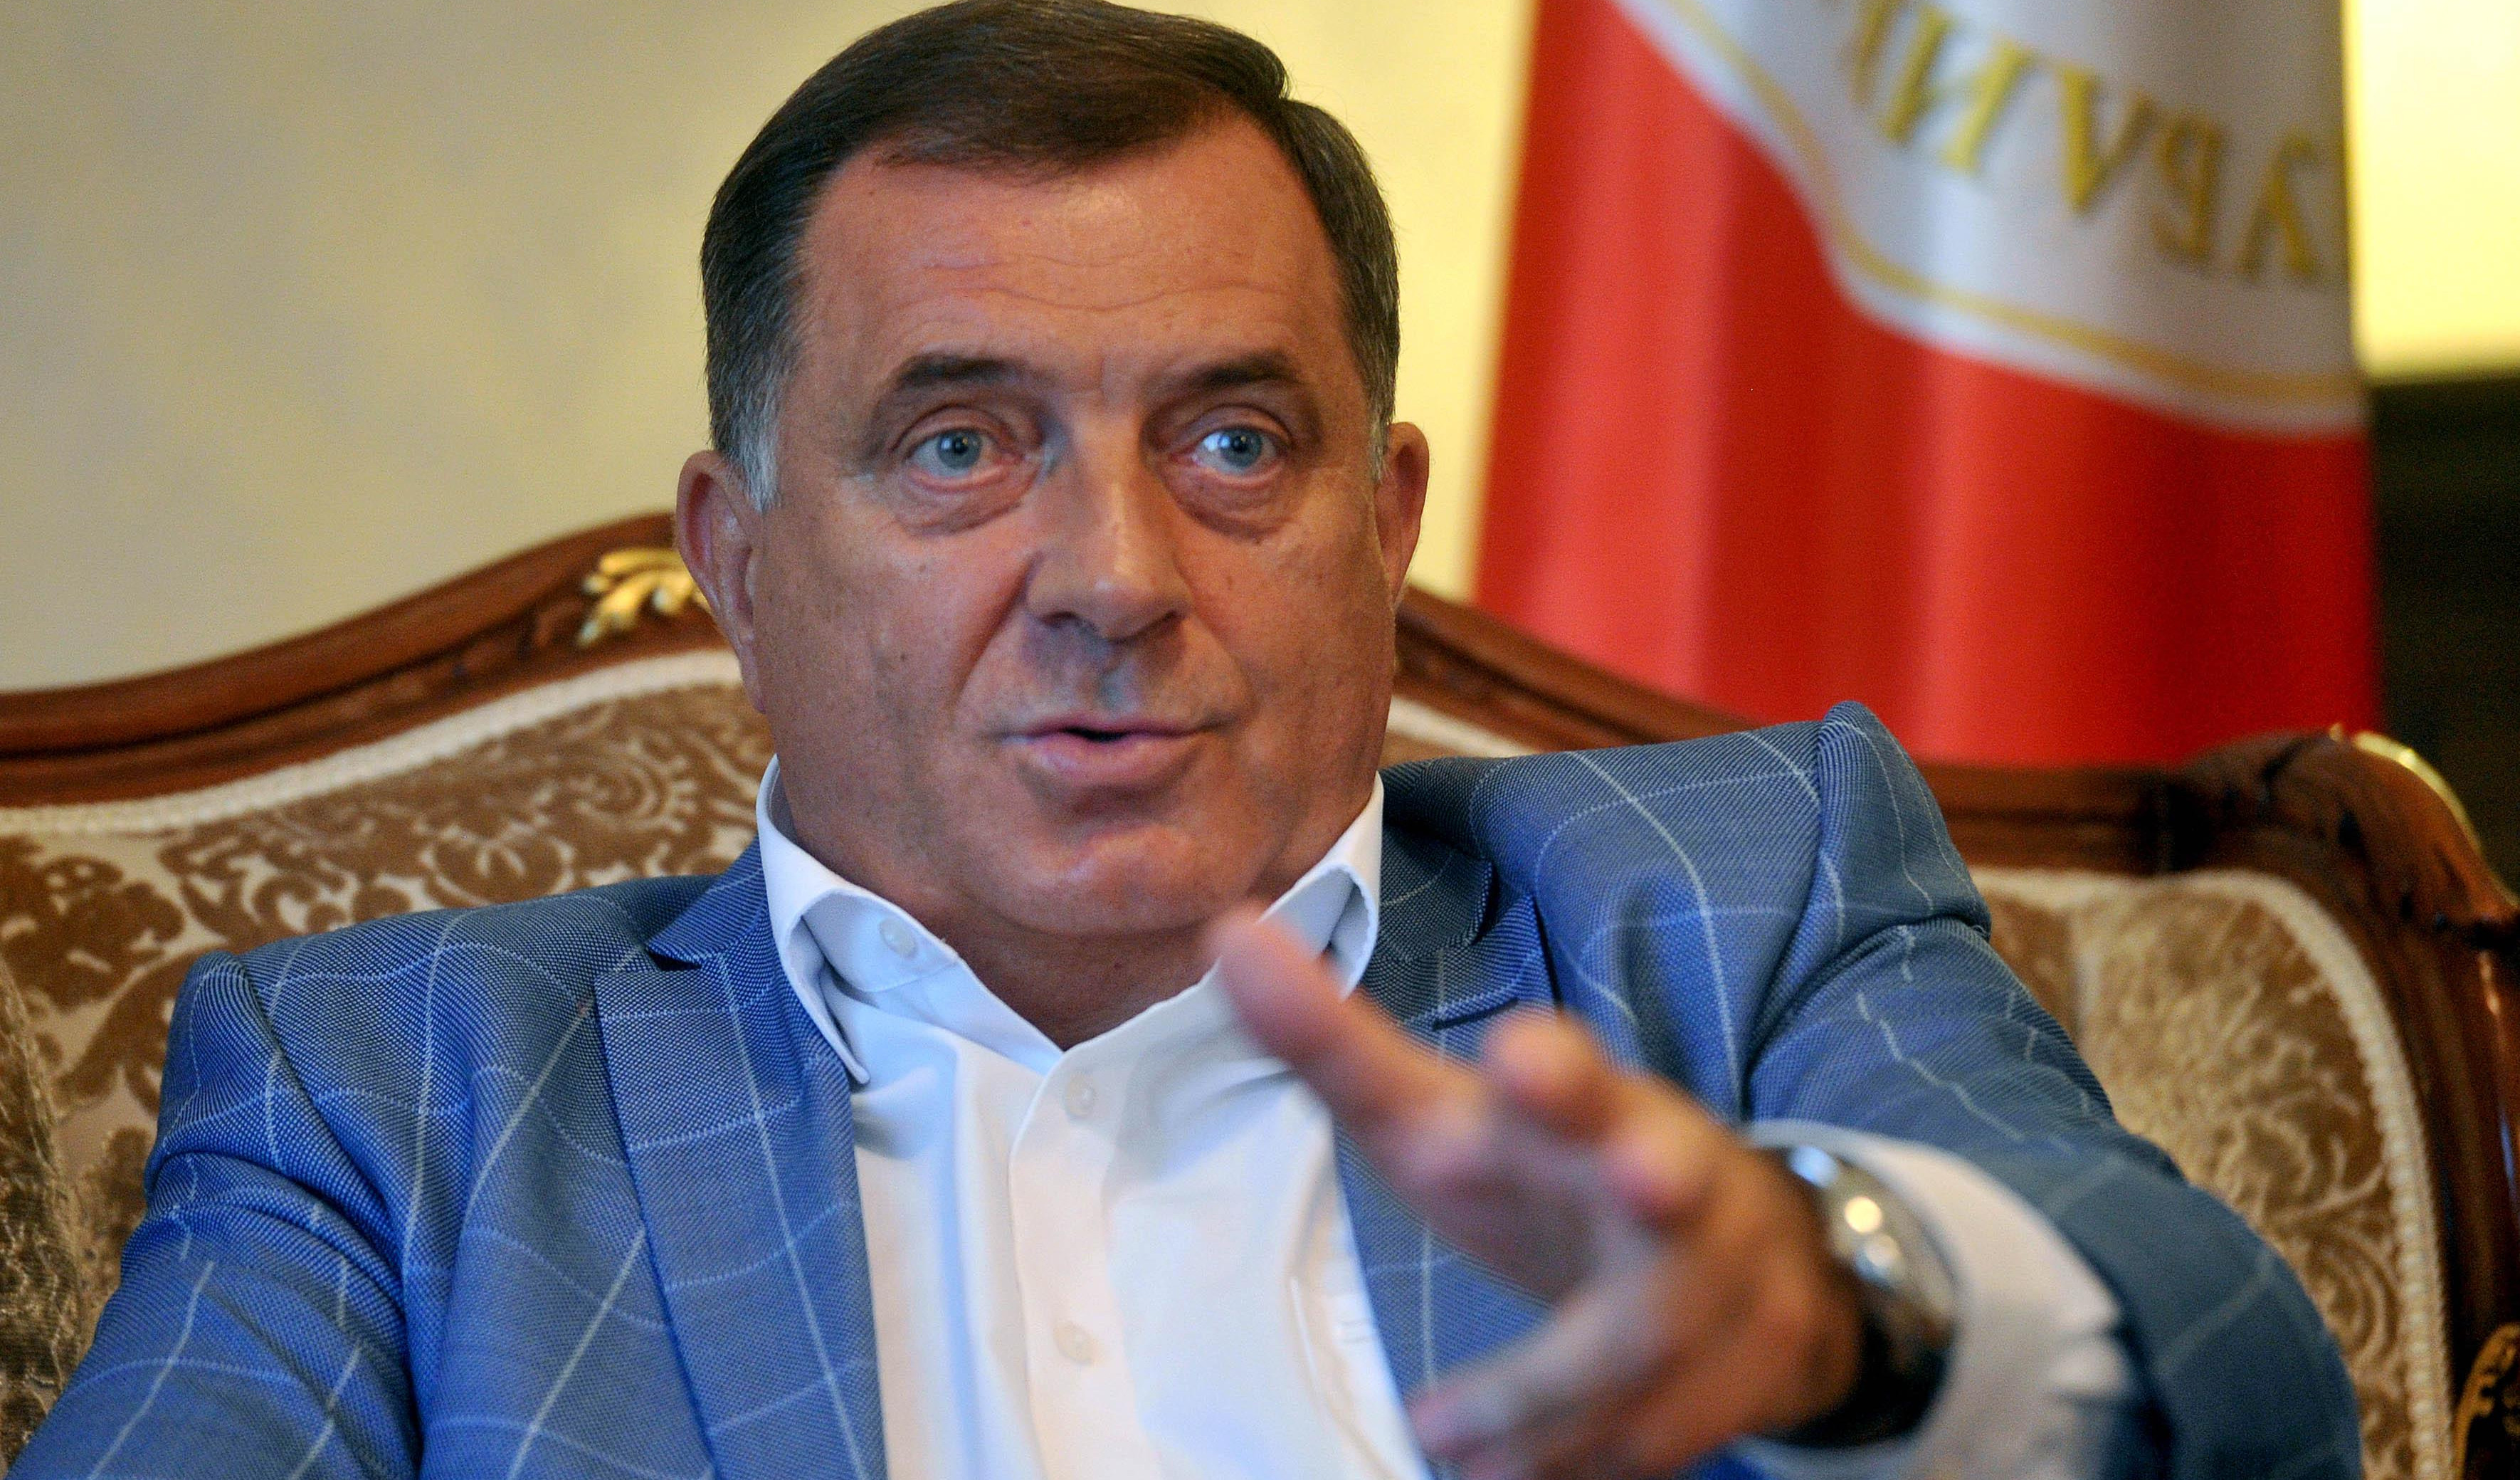 PREDSEDNIK REPUBLIKE SRPSKE PREDLAŽE PLAN! Dodik: Srbija da traži sever Kosova i Srpsku!